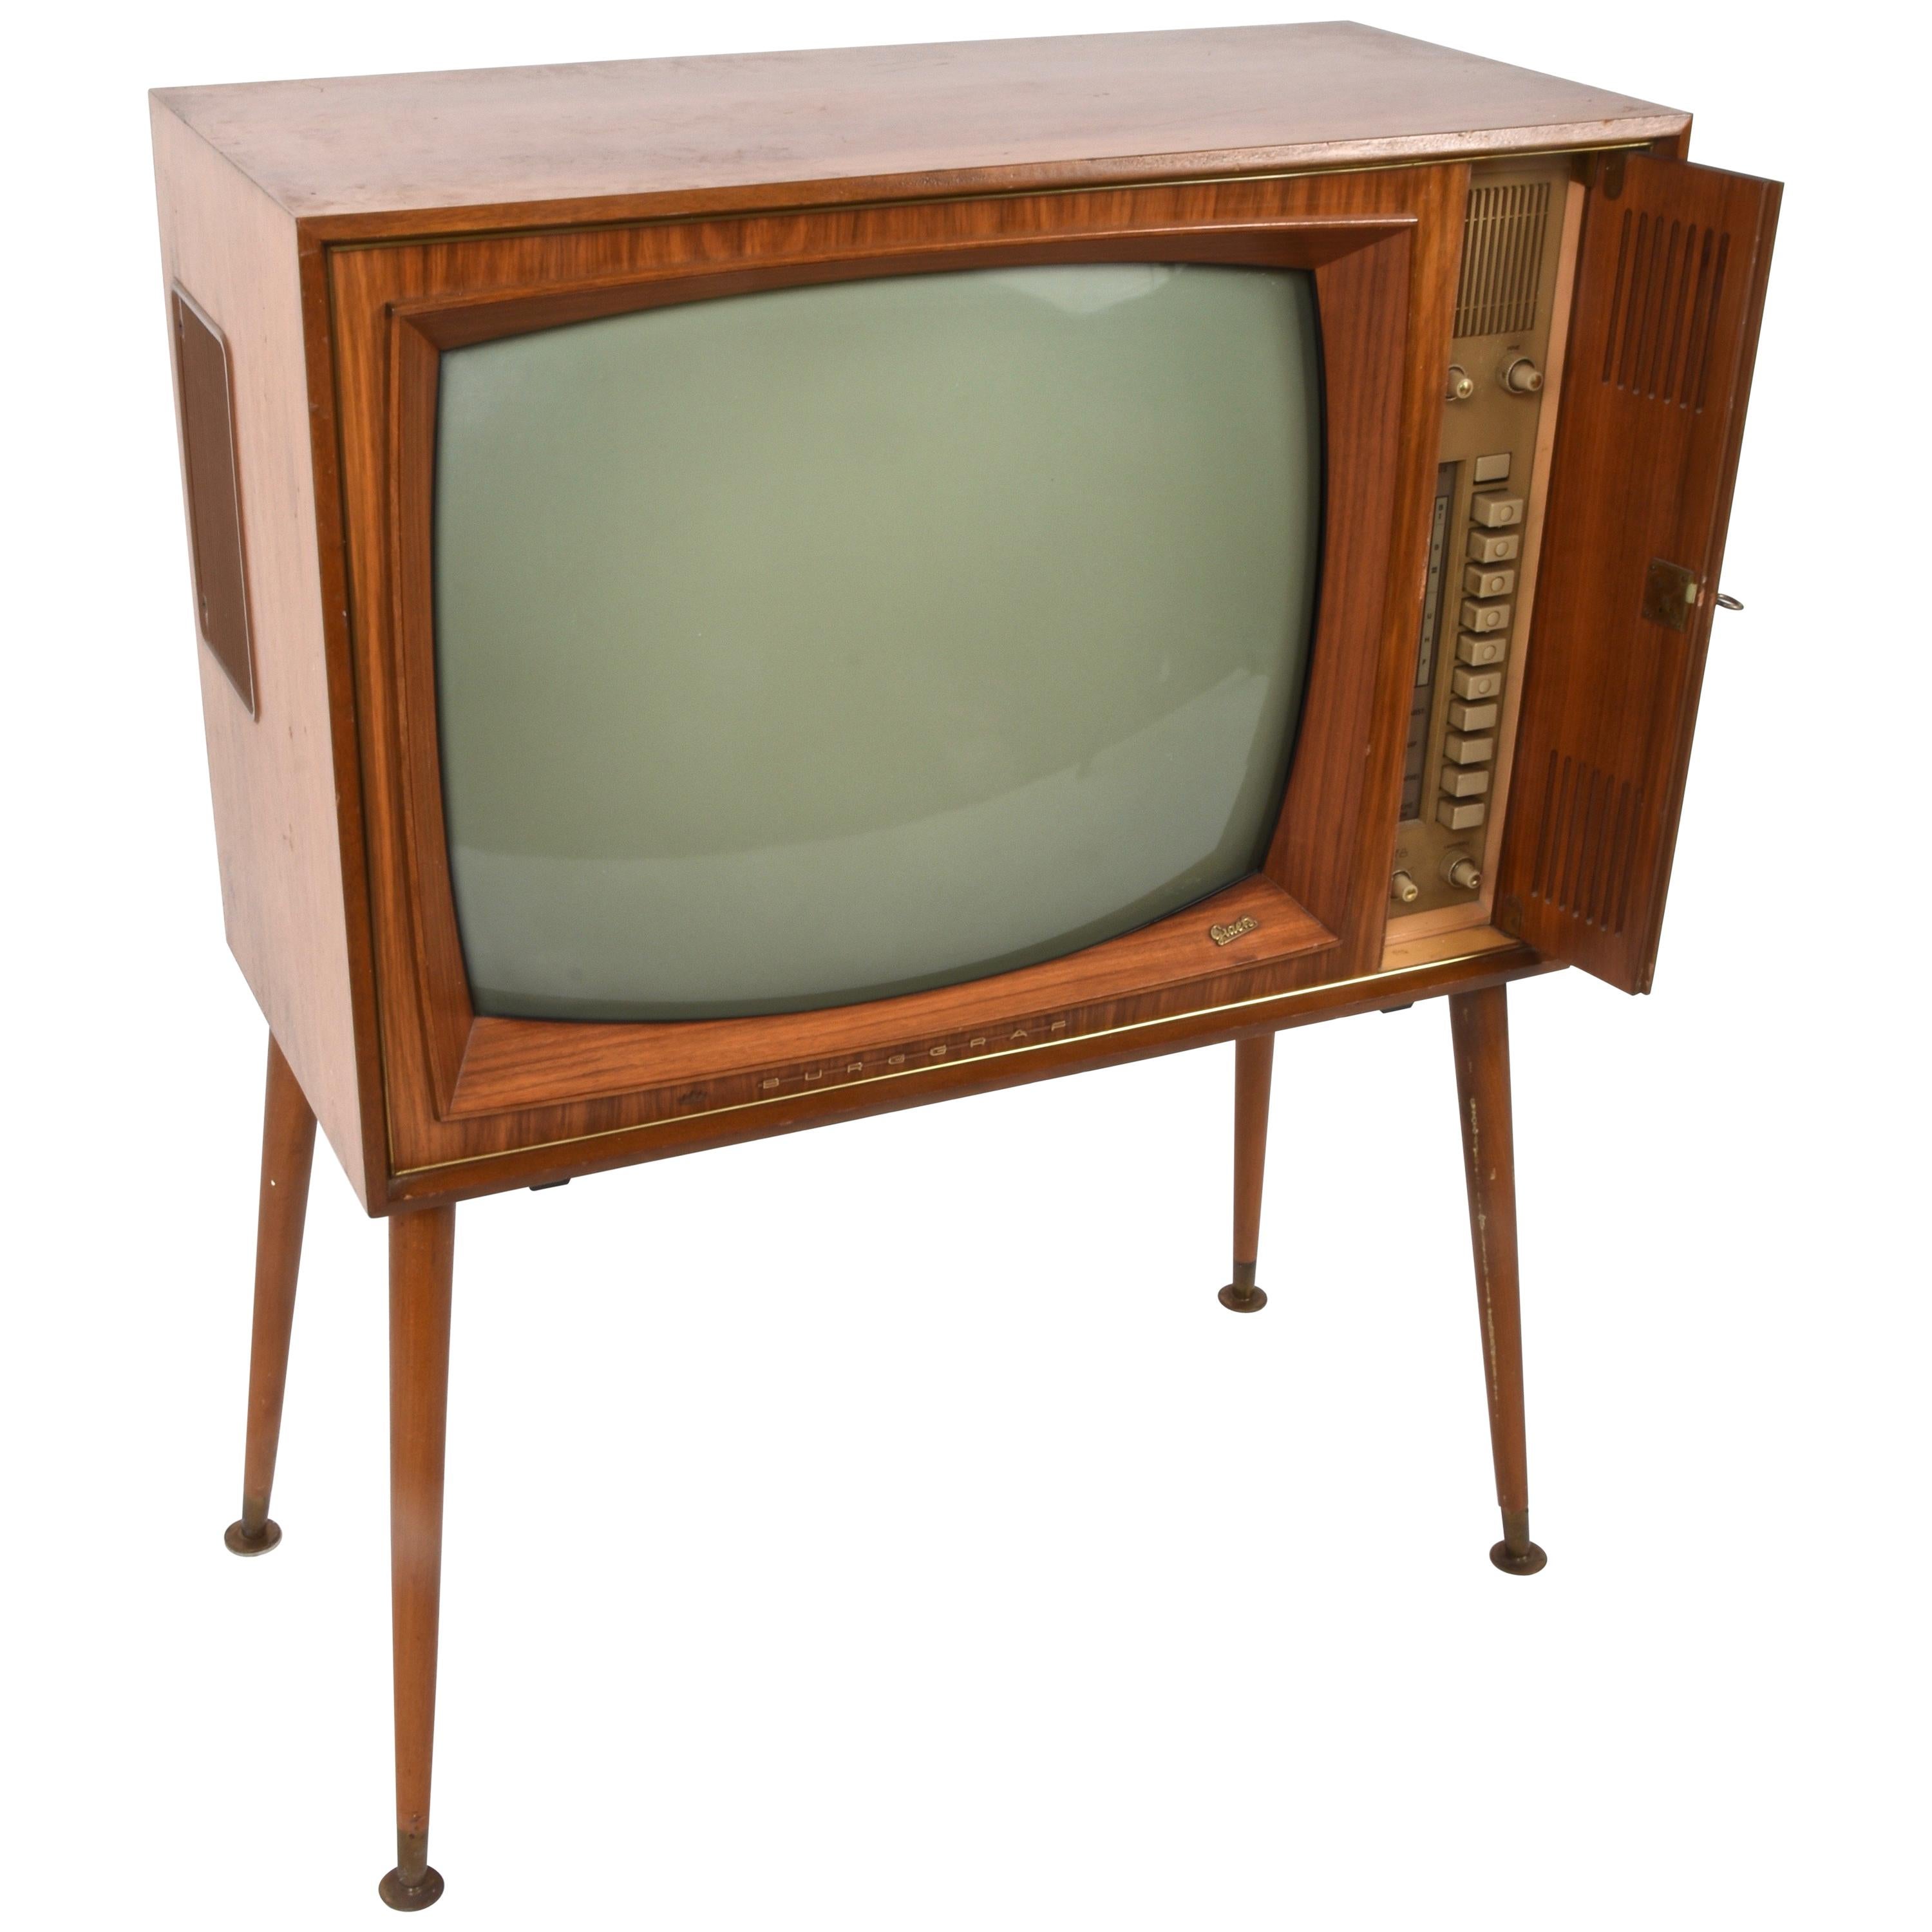 Vintage Tv Graetz Burggraf, 1960s Wooden Floor Television, Midcentury